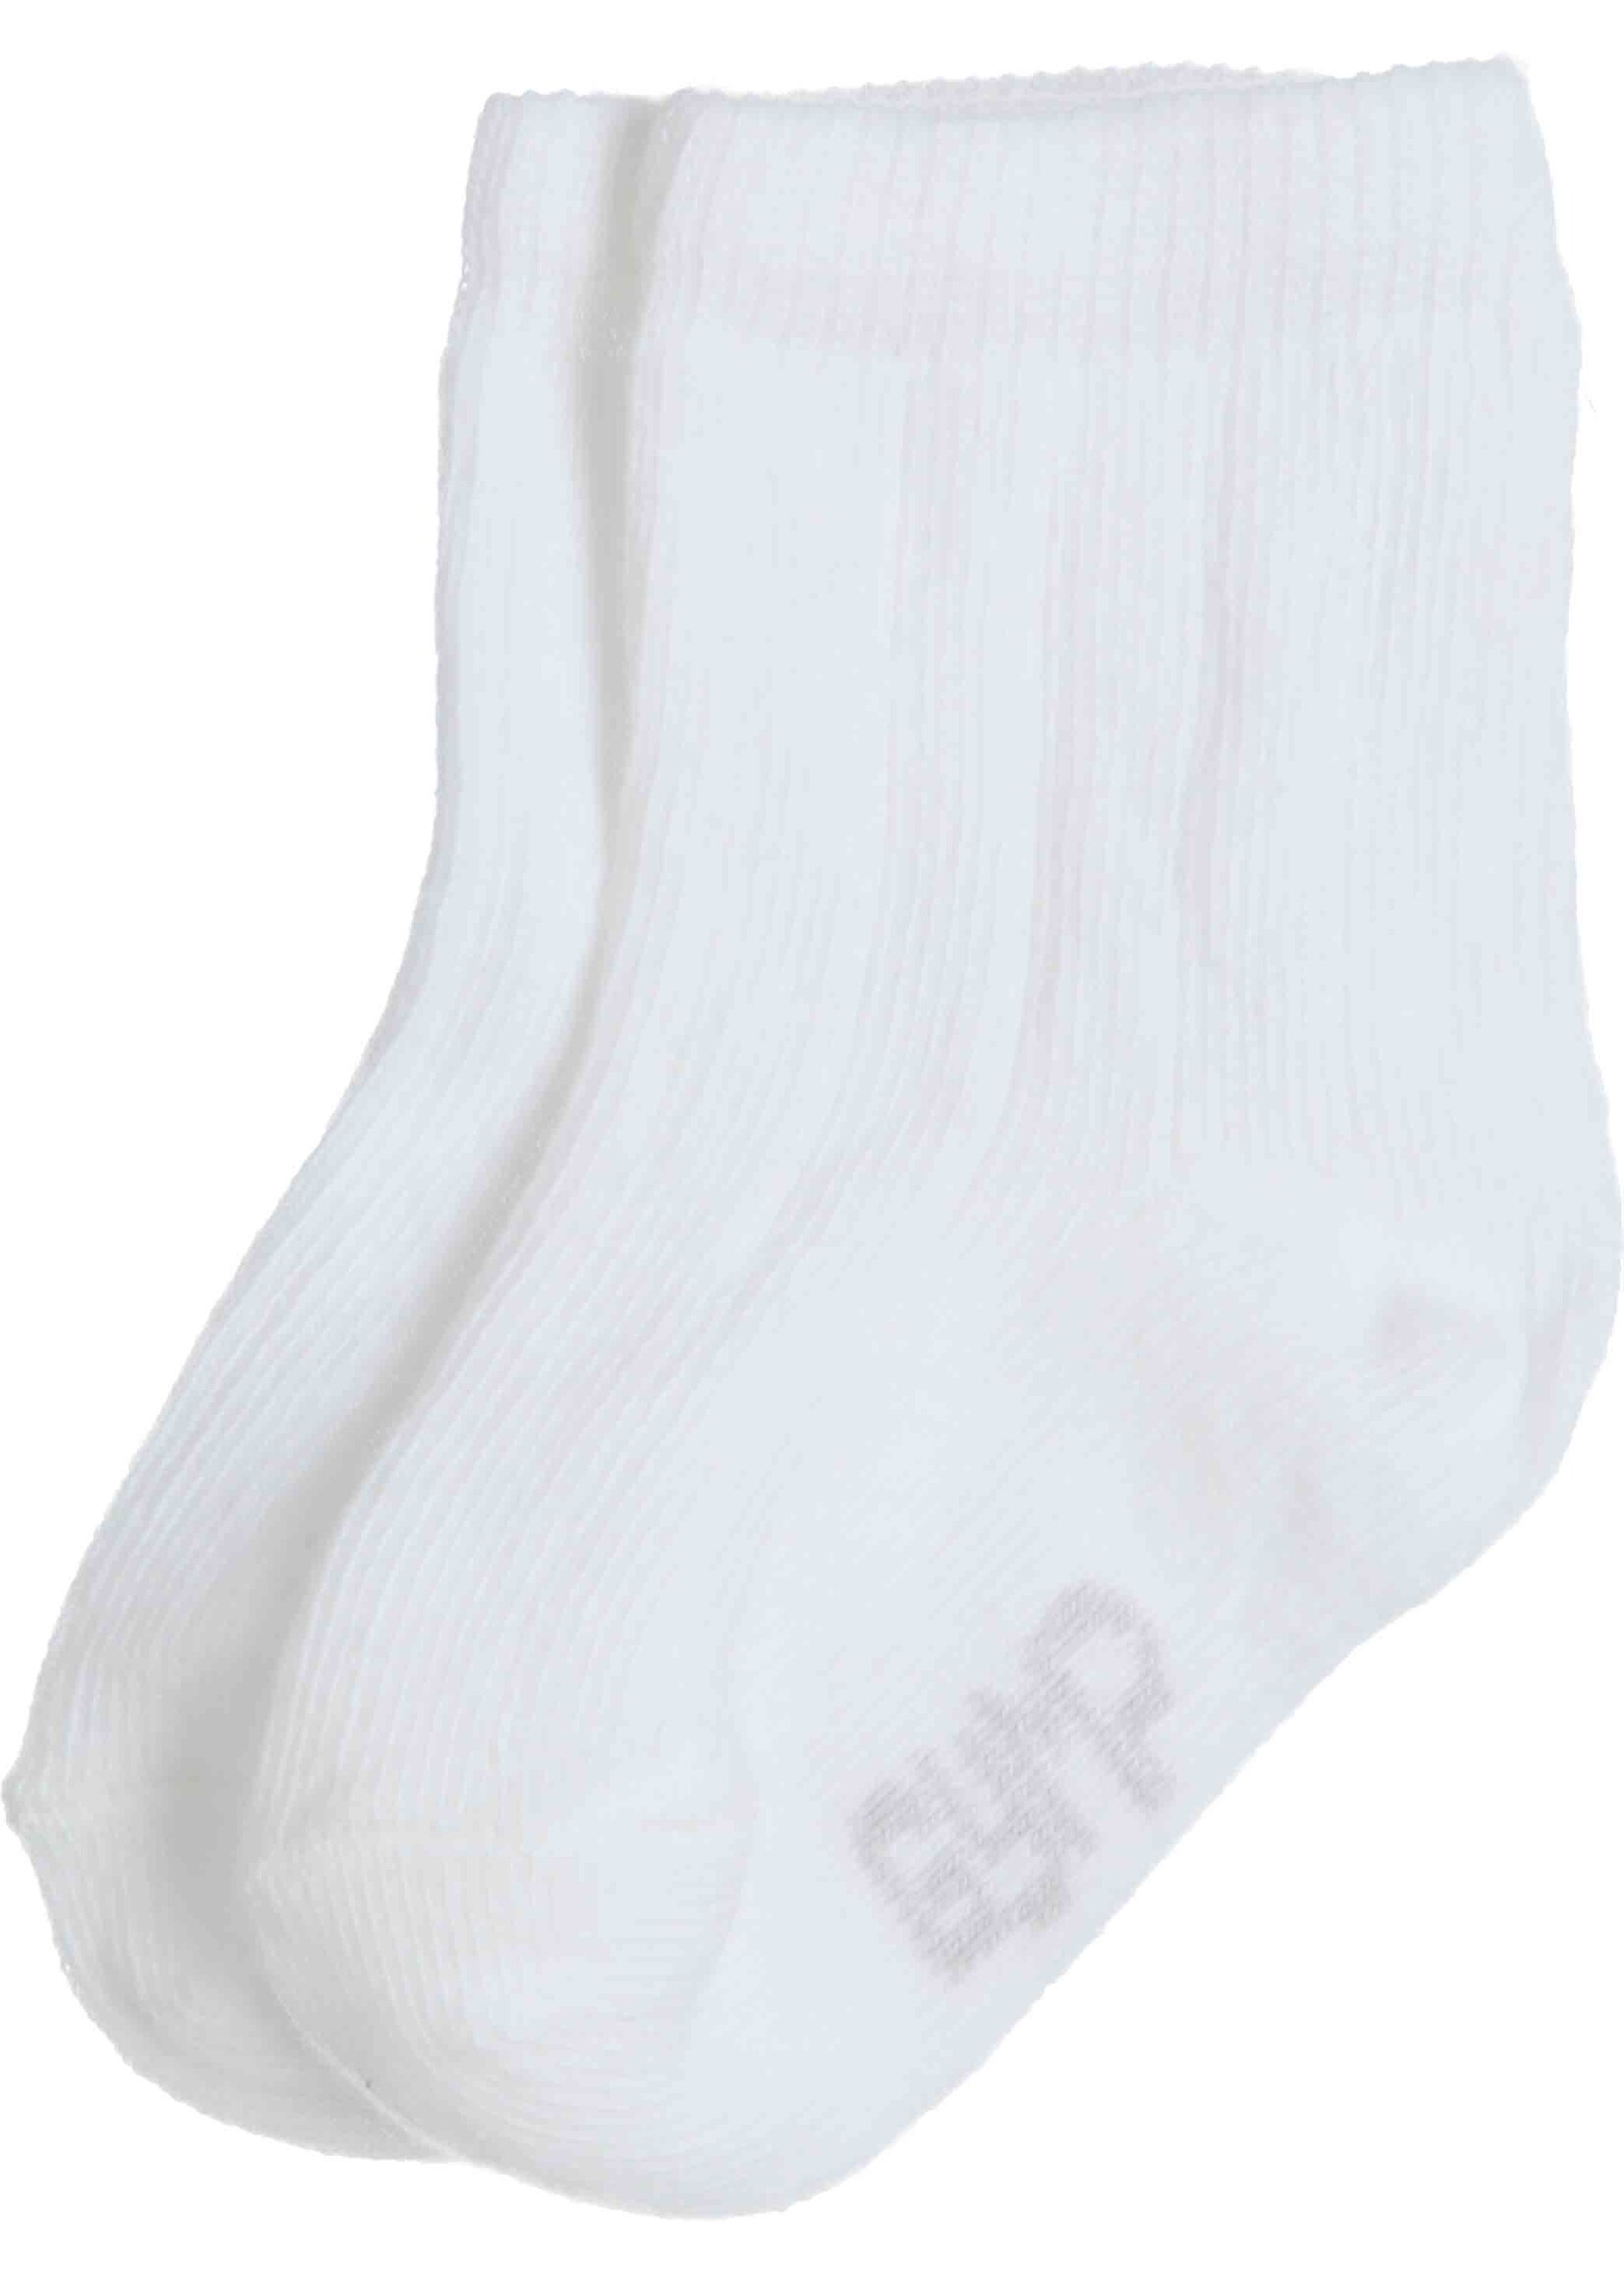 Gymp Boys Socks Kite 05-4082-20 White - White